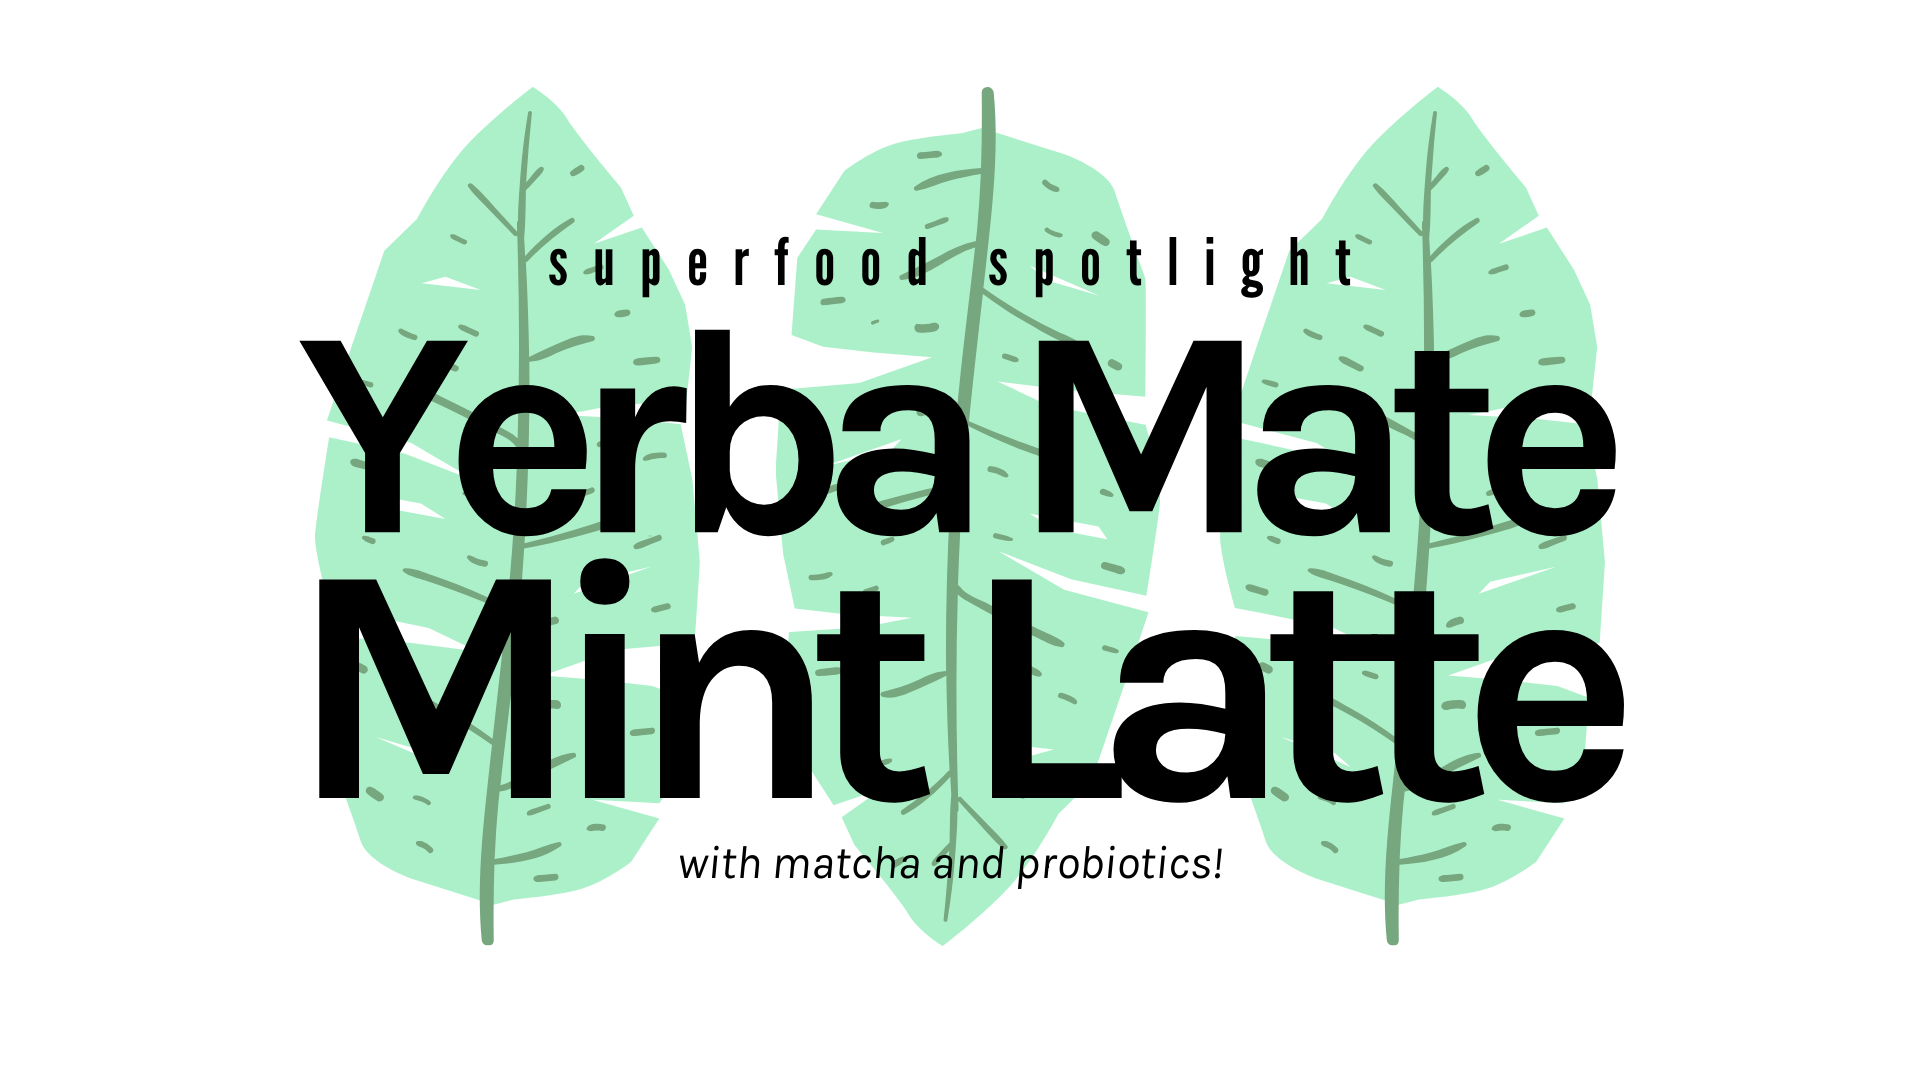 Superfood Spotlight: Yerba Mate Mint Latte